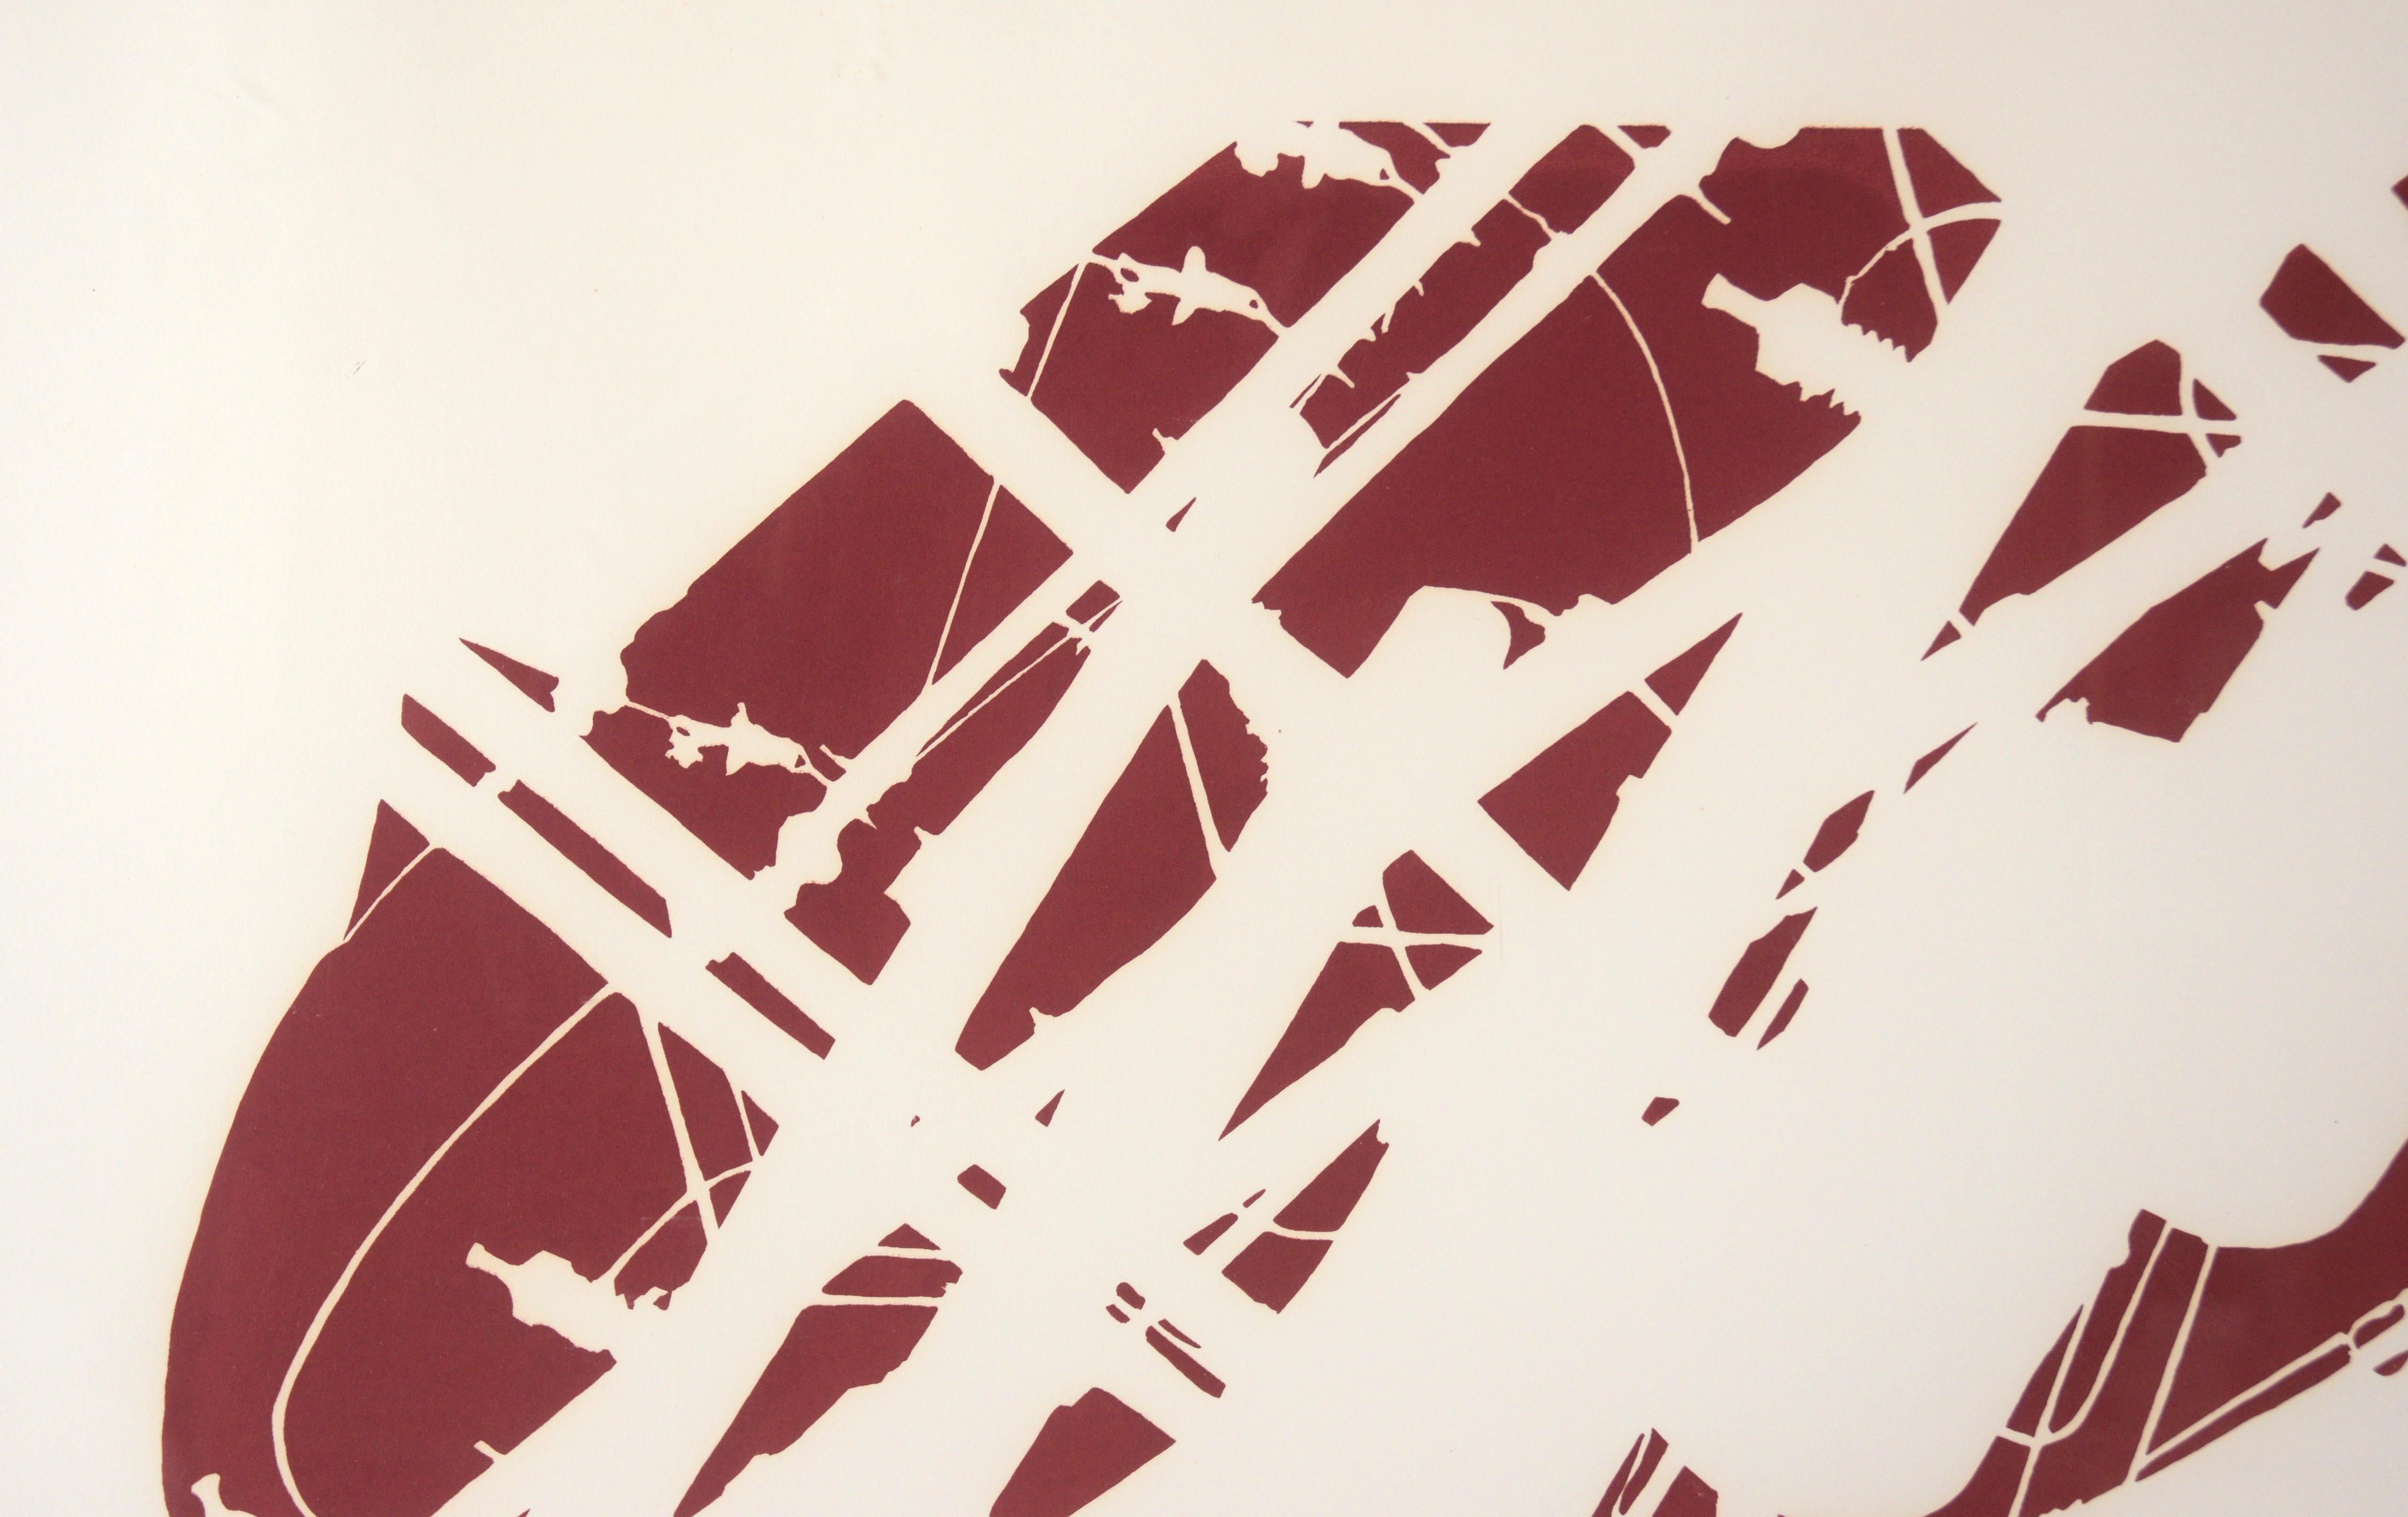 Minimalistische abstrakte Lithographie „Poles“ auf Papier

Kräftige abstrahierte Lithografie von Arnold Mesches (Amerikaner, 1923-2016). Der negative Raum wird mit Dunkelrot ausgefüllt, wodurch ein negativer Effekt entsteht. Das Motiv ist alltäglich